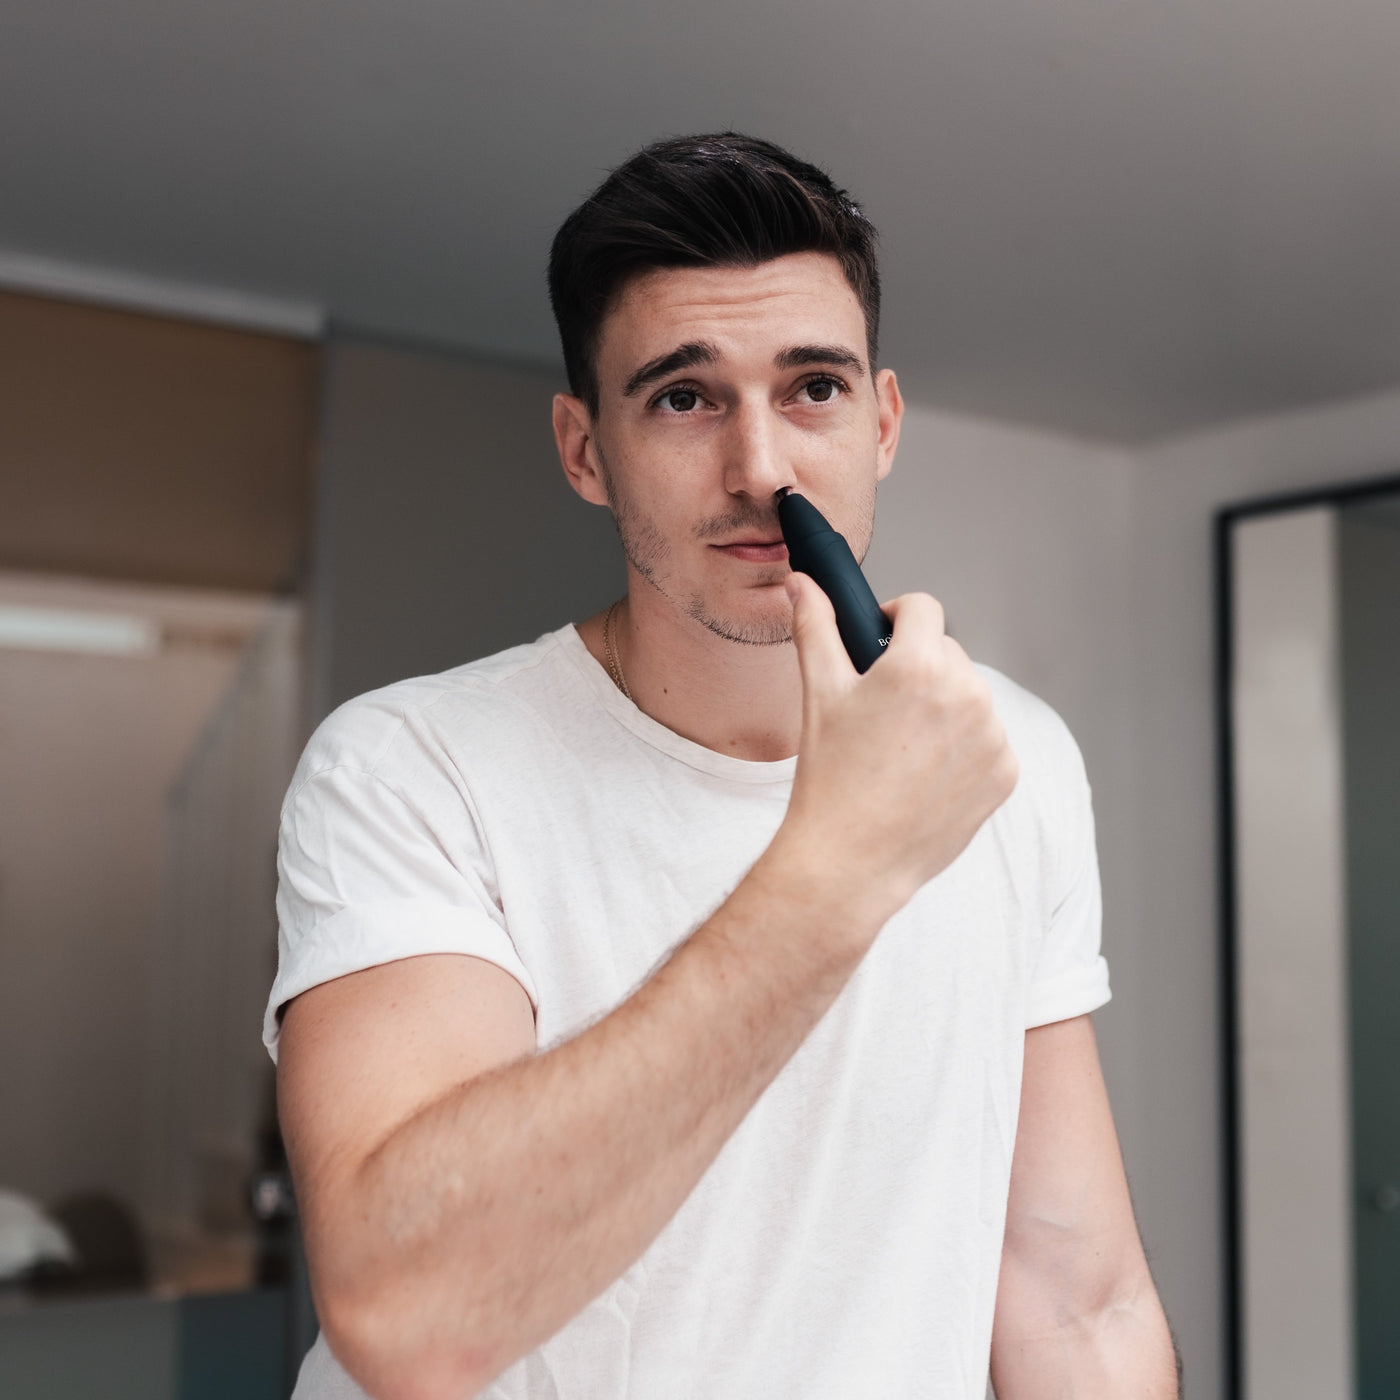 man trimming nose hair in mirror